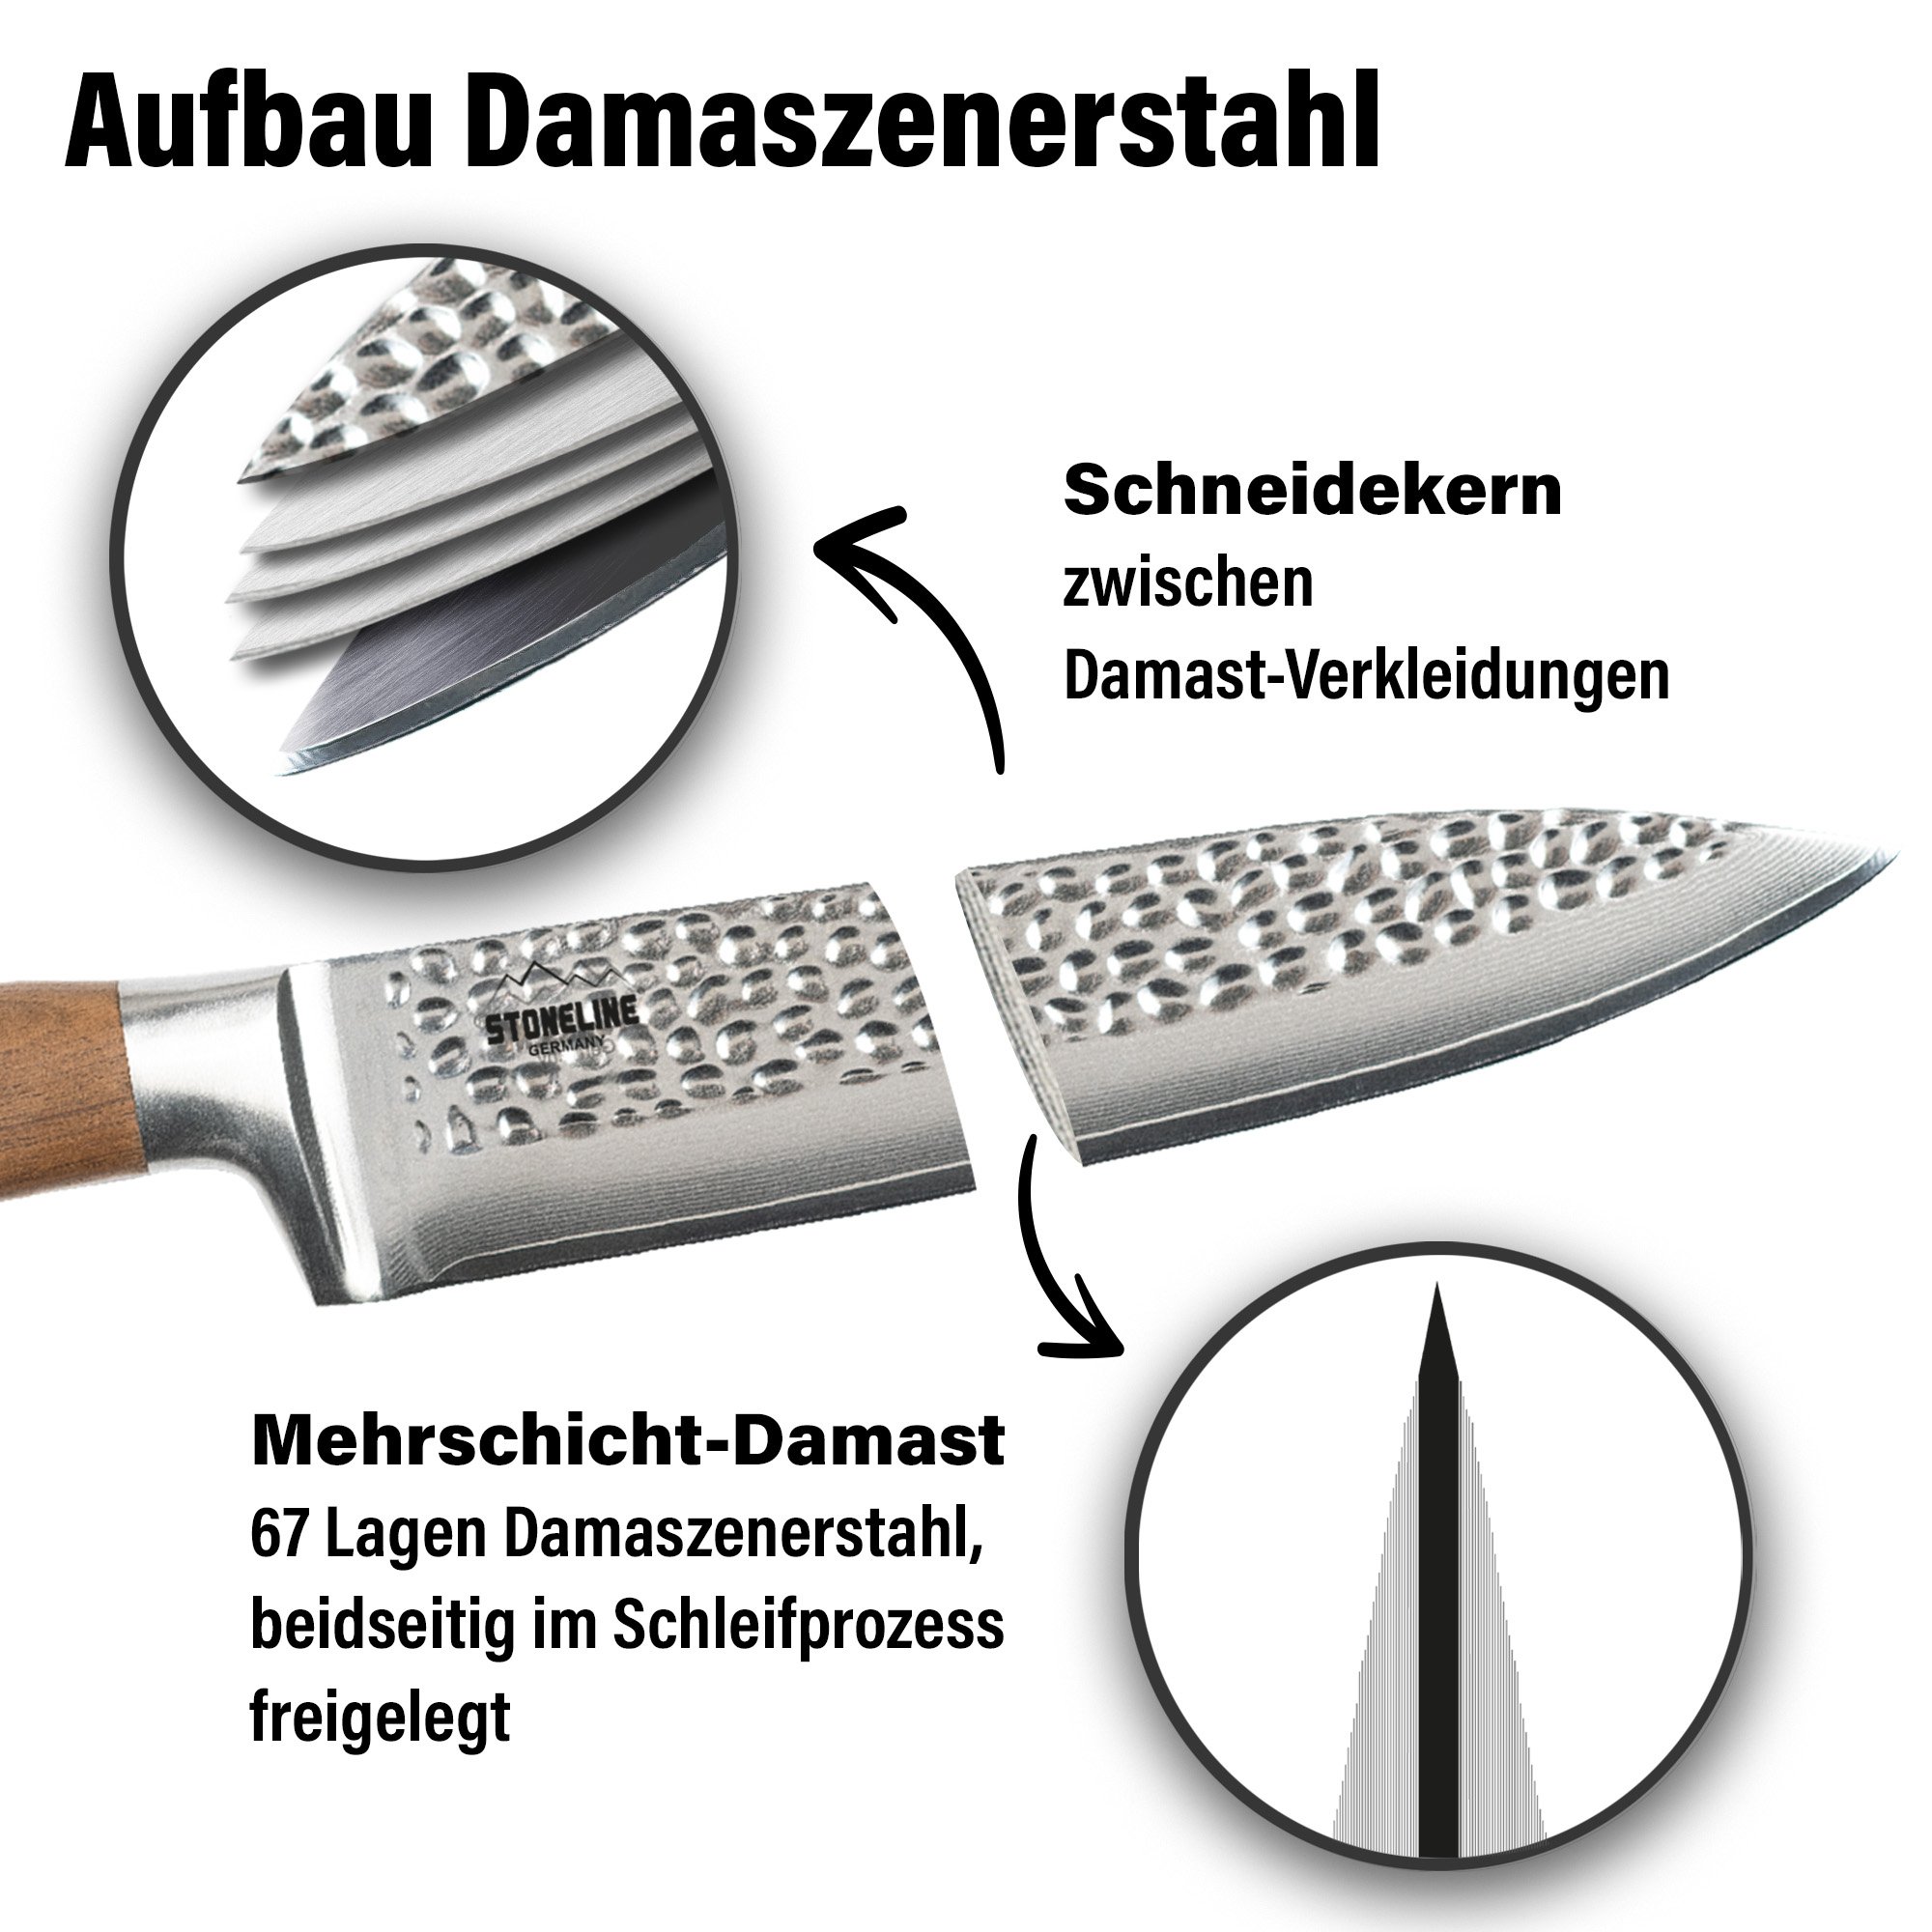 STONELINE® Hammerschlag Allzweckmesser 24 cm, aus Damaszenerstahl